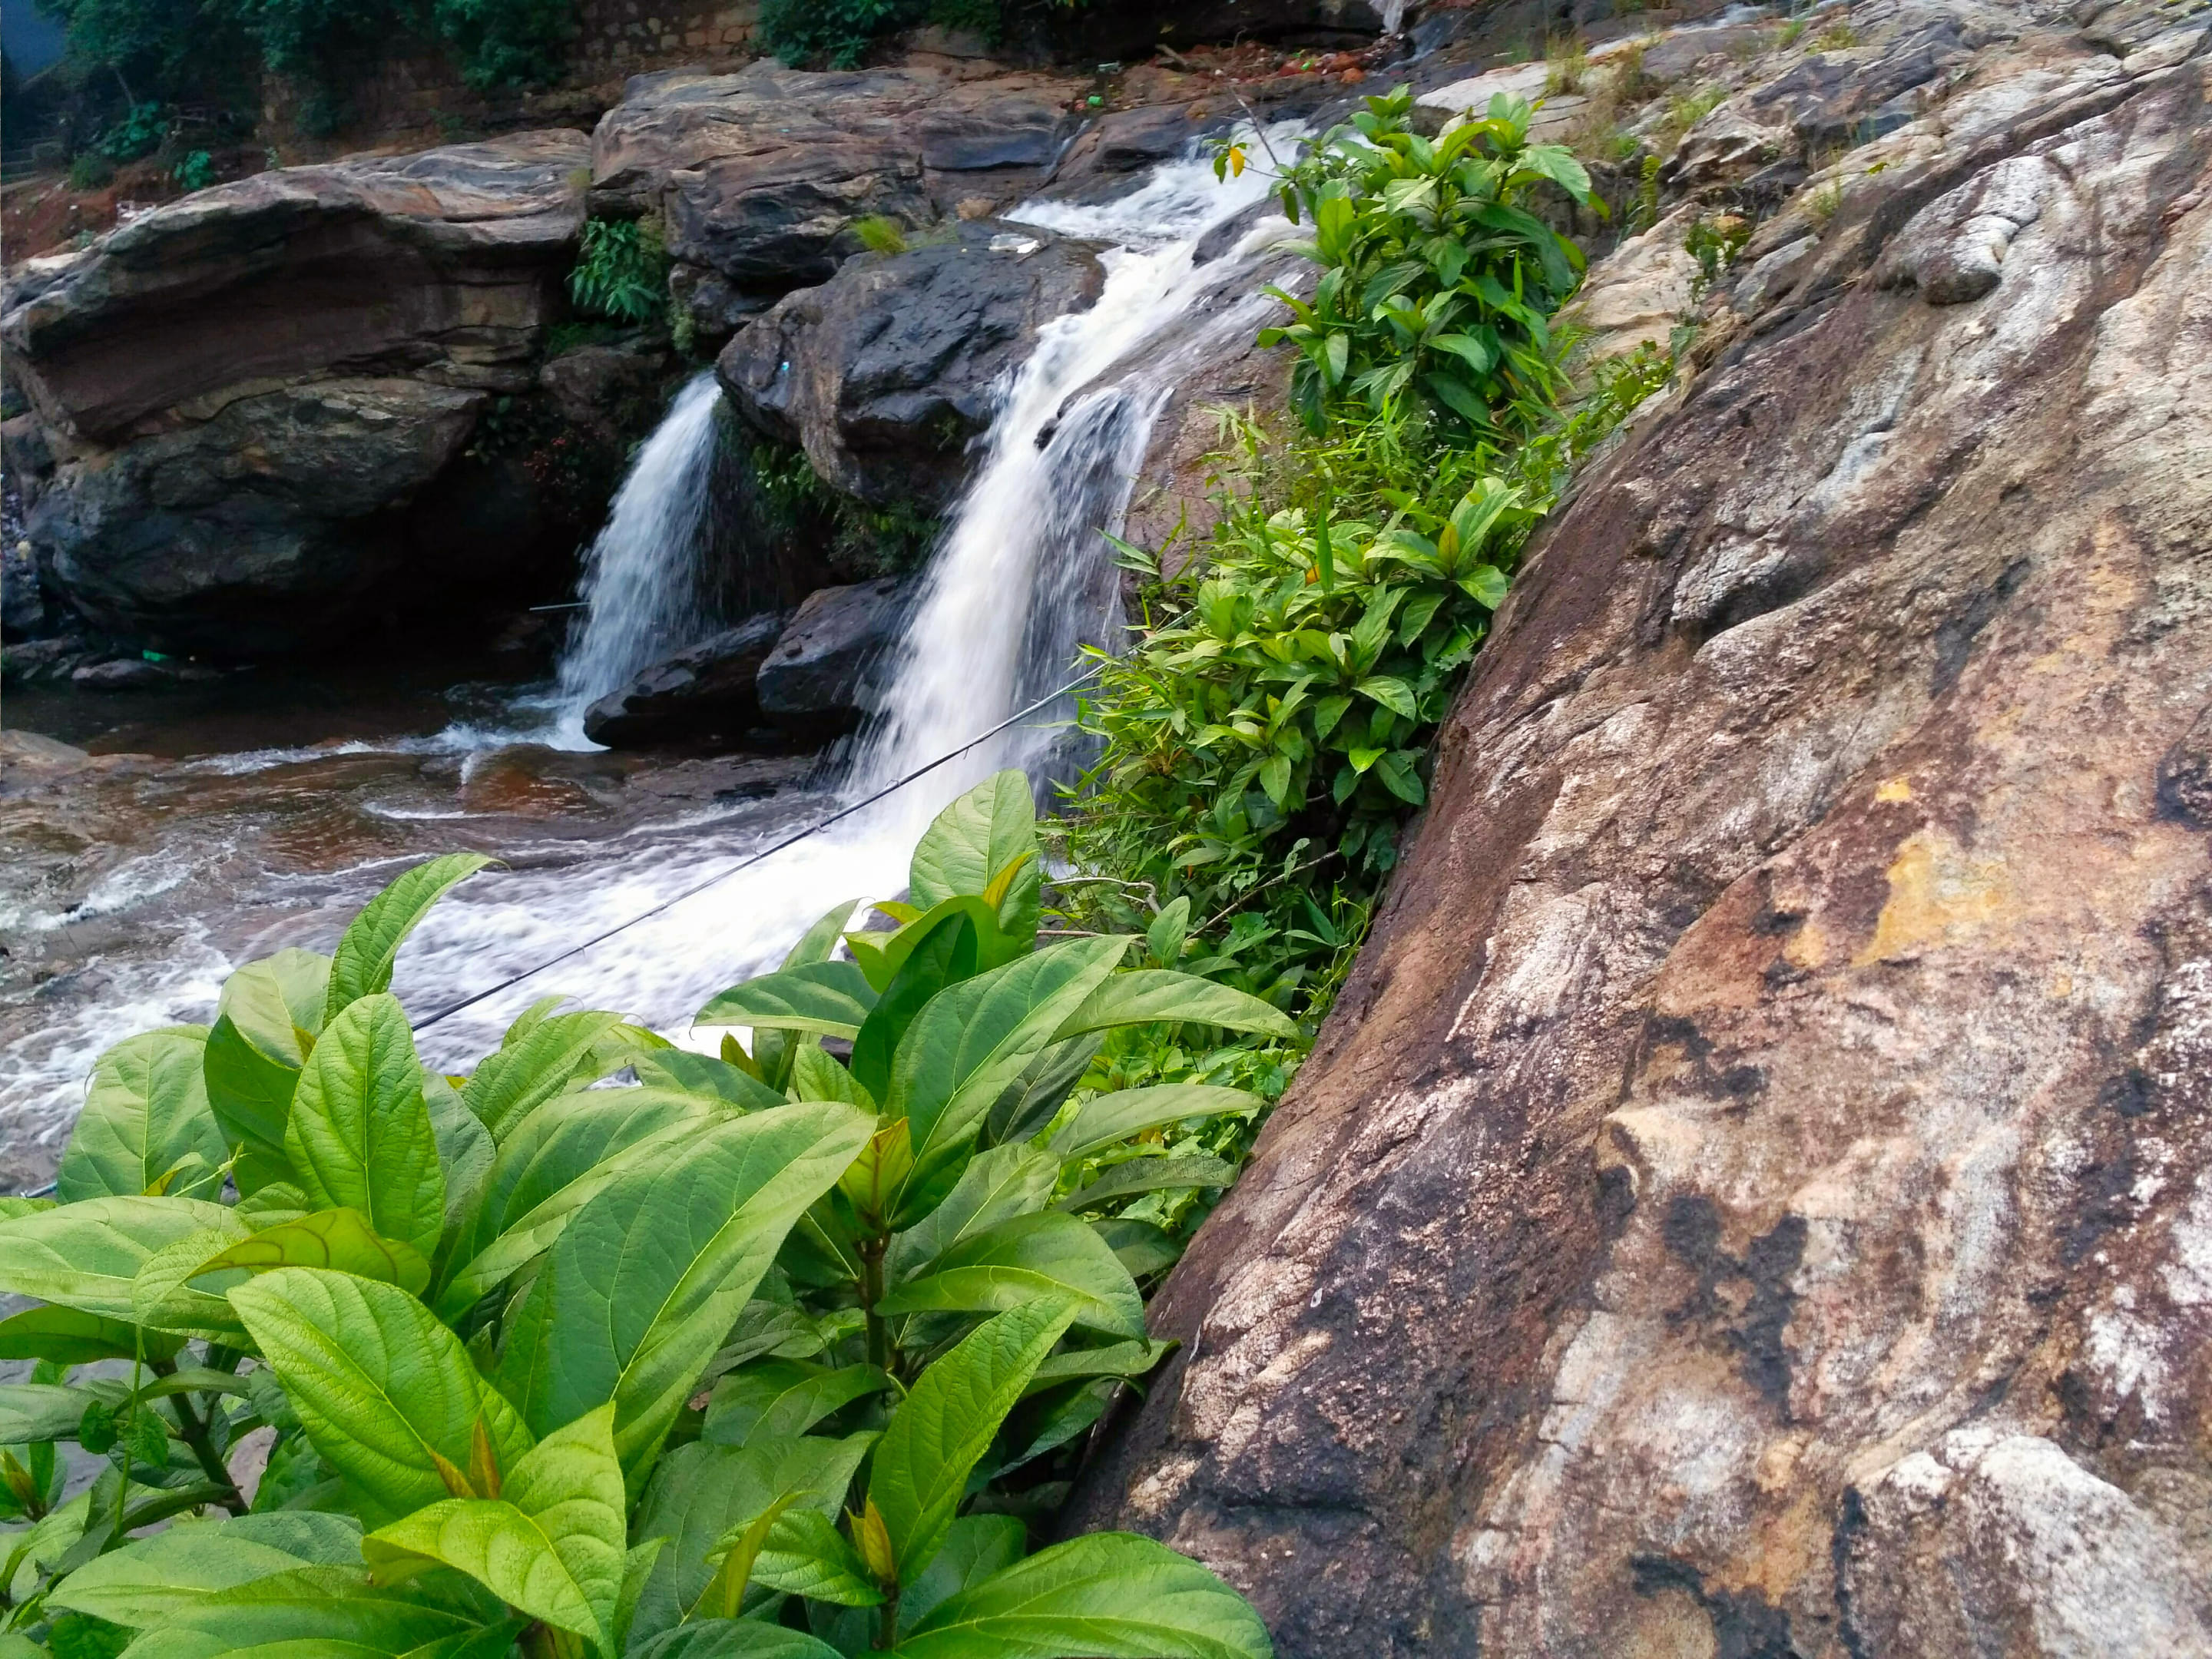 Chinna Kallar Falls Overview